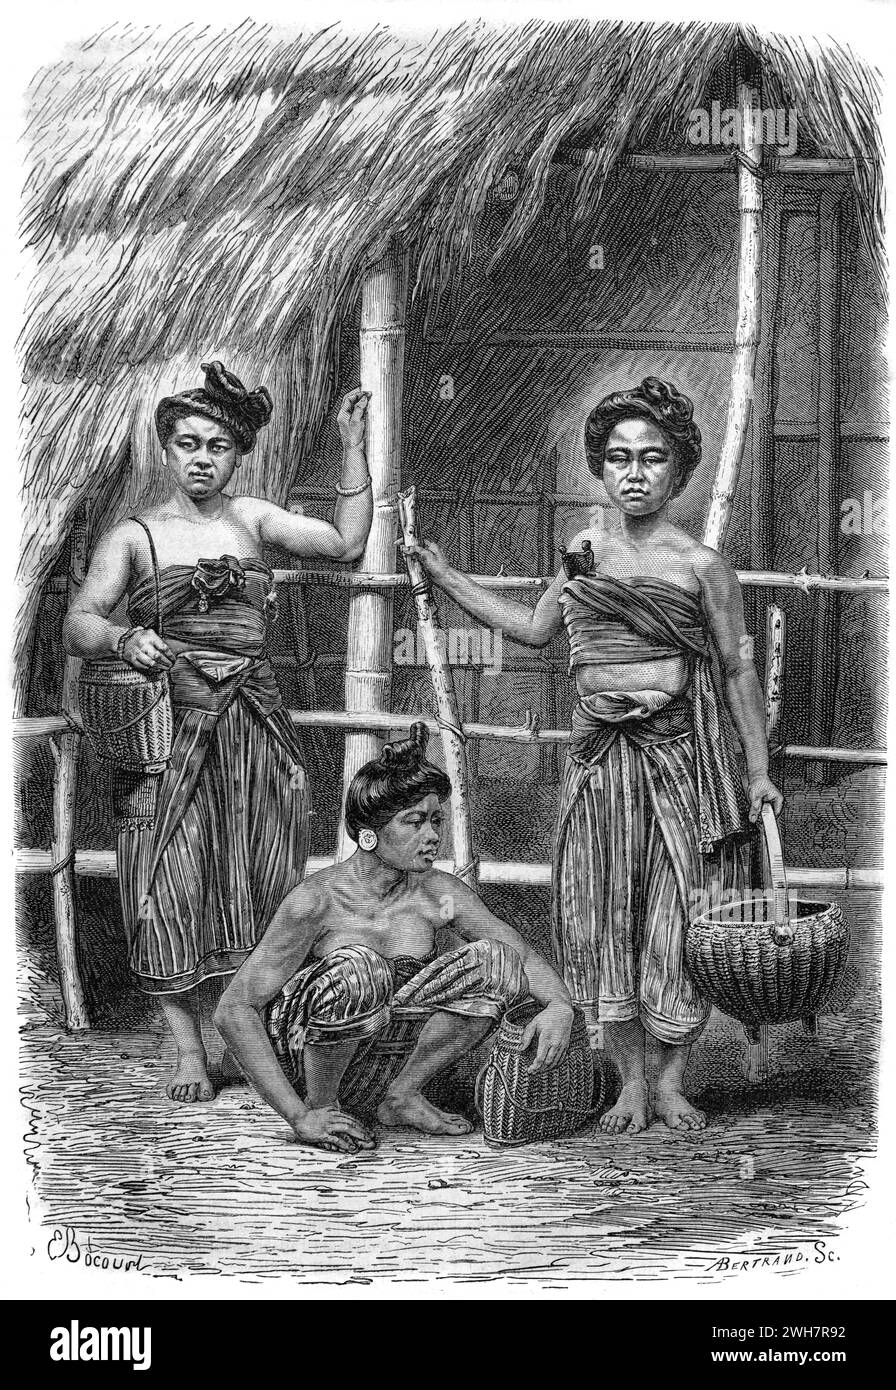 Laotische oder laotische Frauen tragen traditionelle Kleidung oder Kleidung neben ihrer Bambus und Grass Village Hut Laos. Vintage oder historische Gravur oder Illustration 1863 Stockfoto